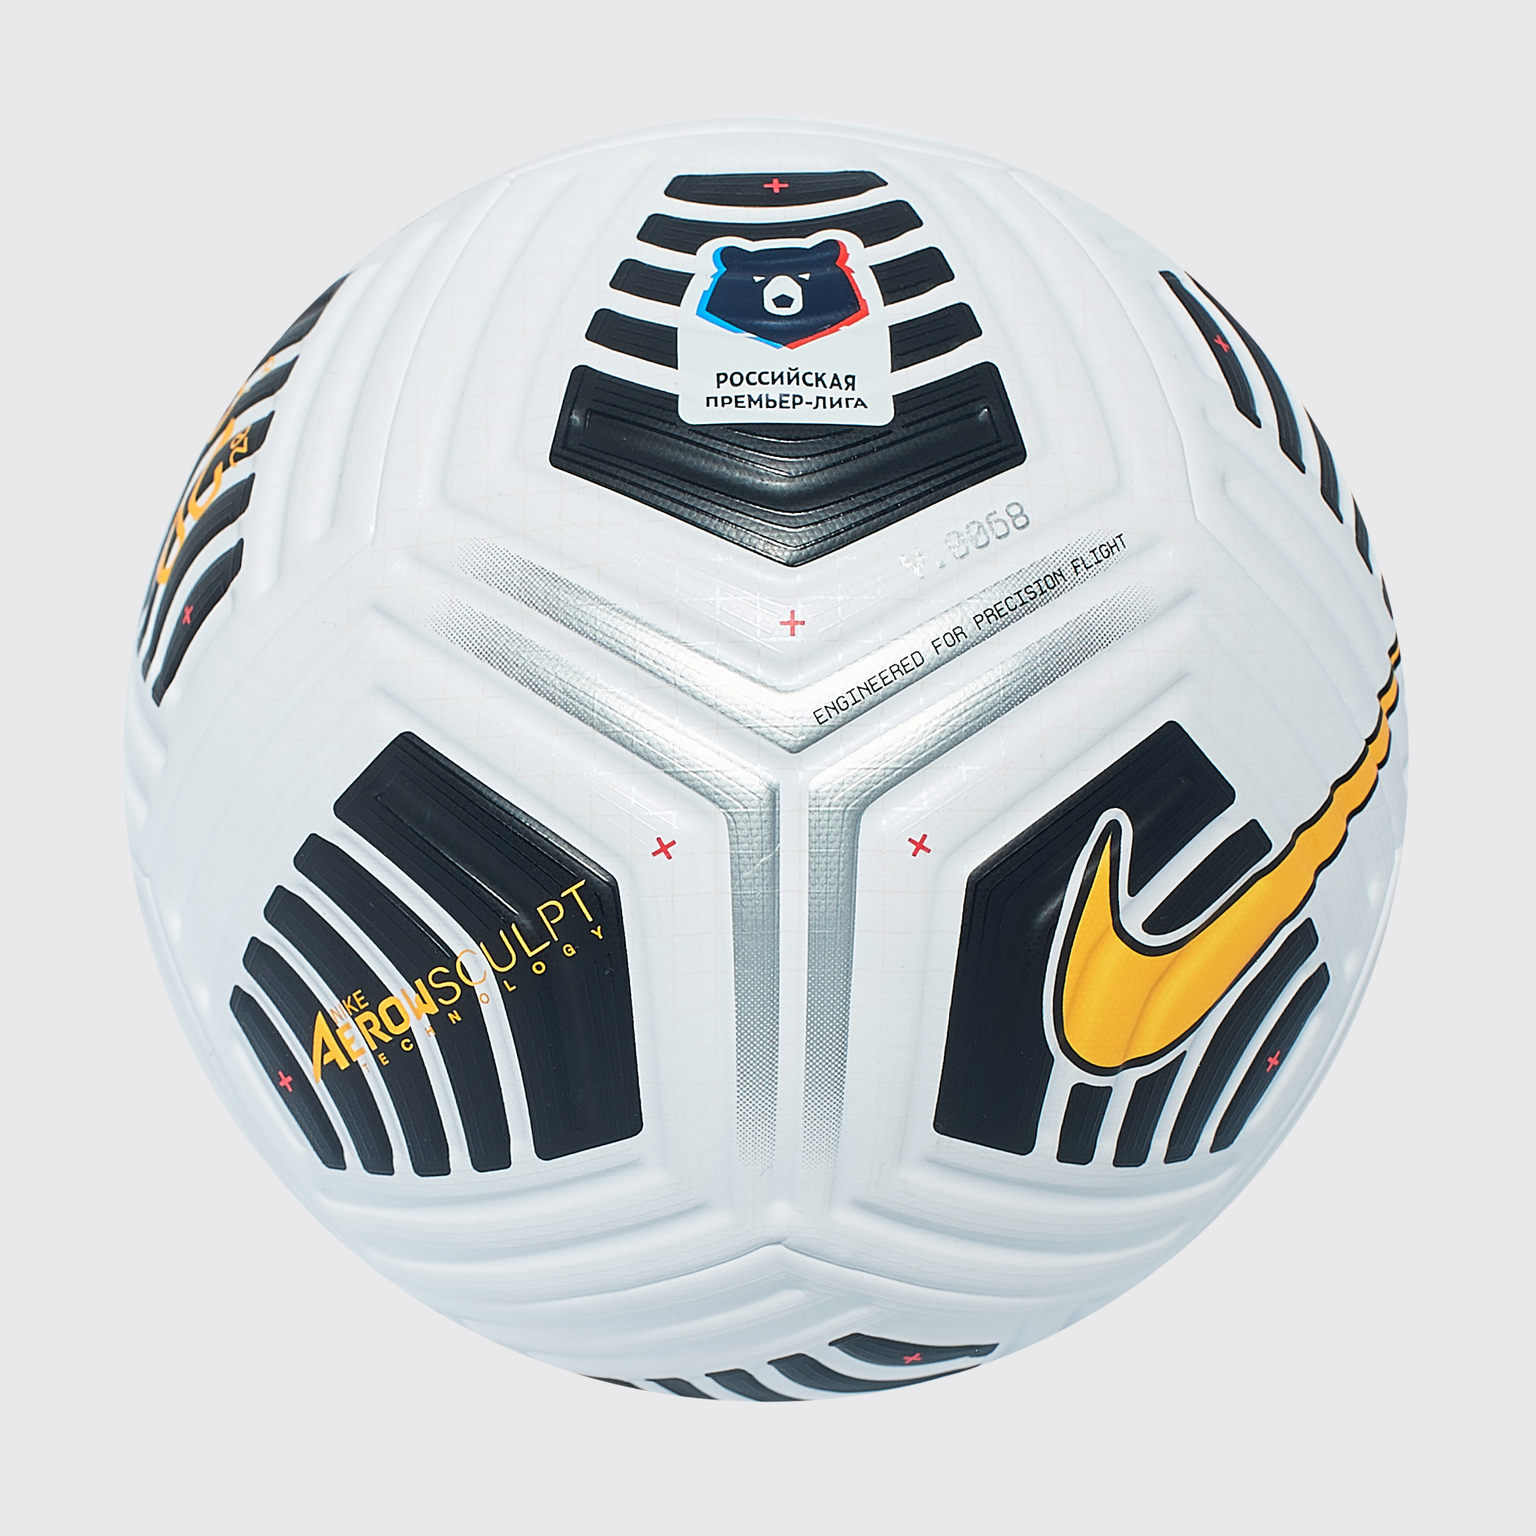 Мяч футбольный Nike Flight RPL CQ7328-100